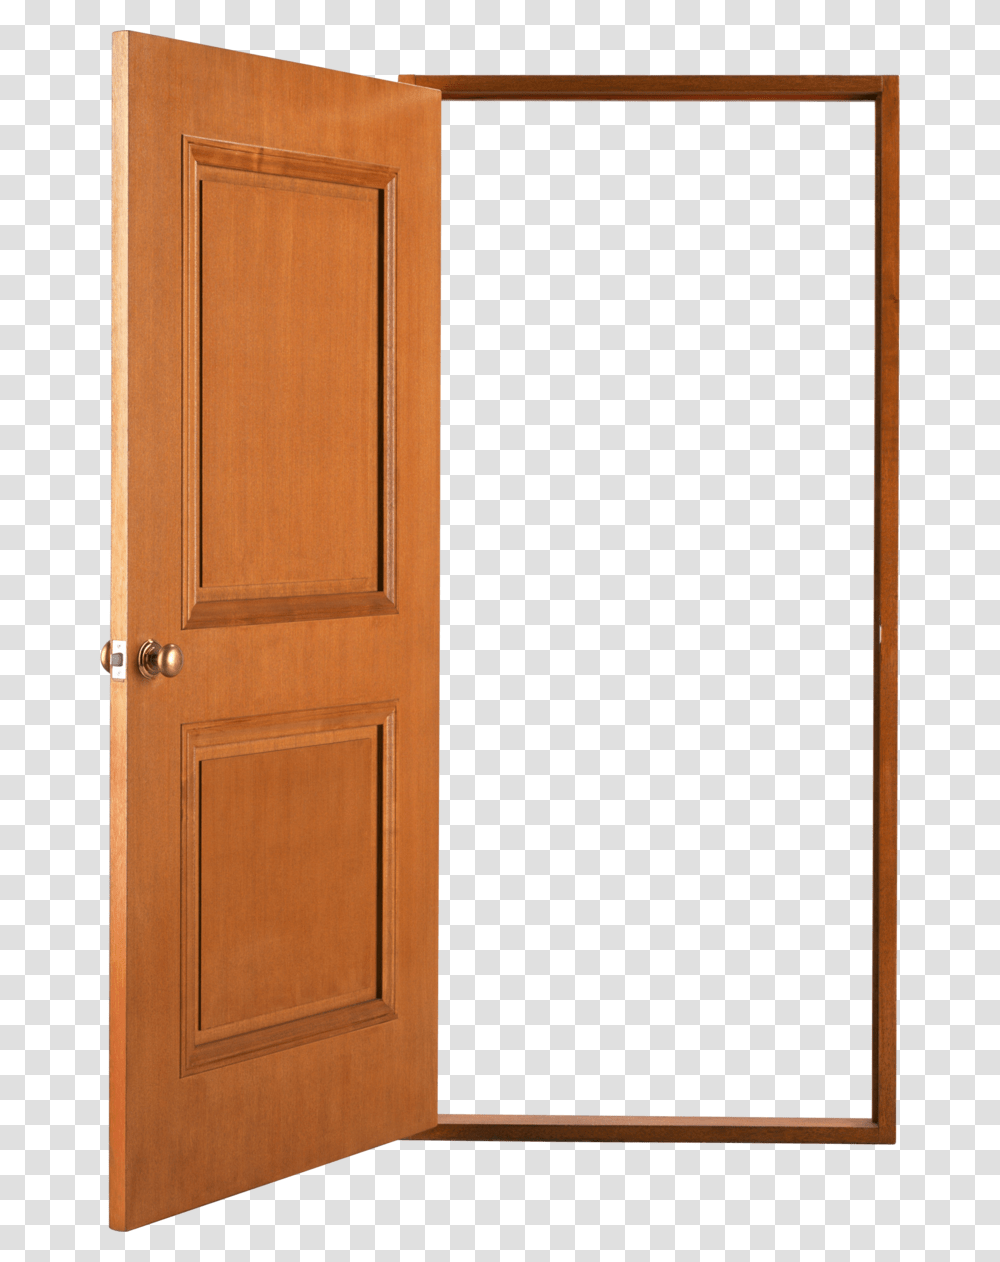 Open Door, Furniture, Folding Door, French Door, Chair Transparent Png